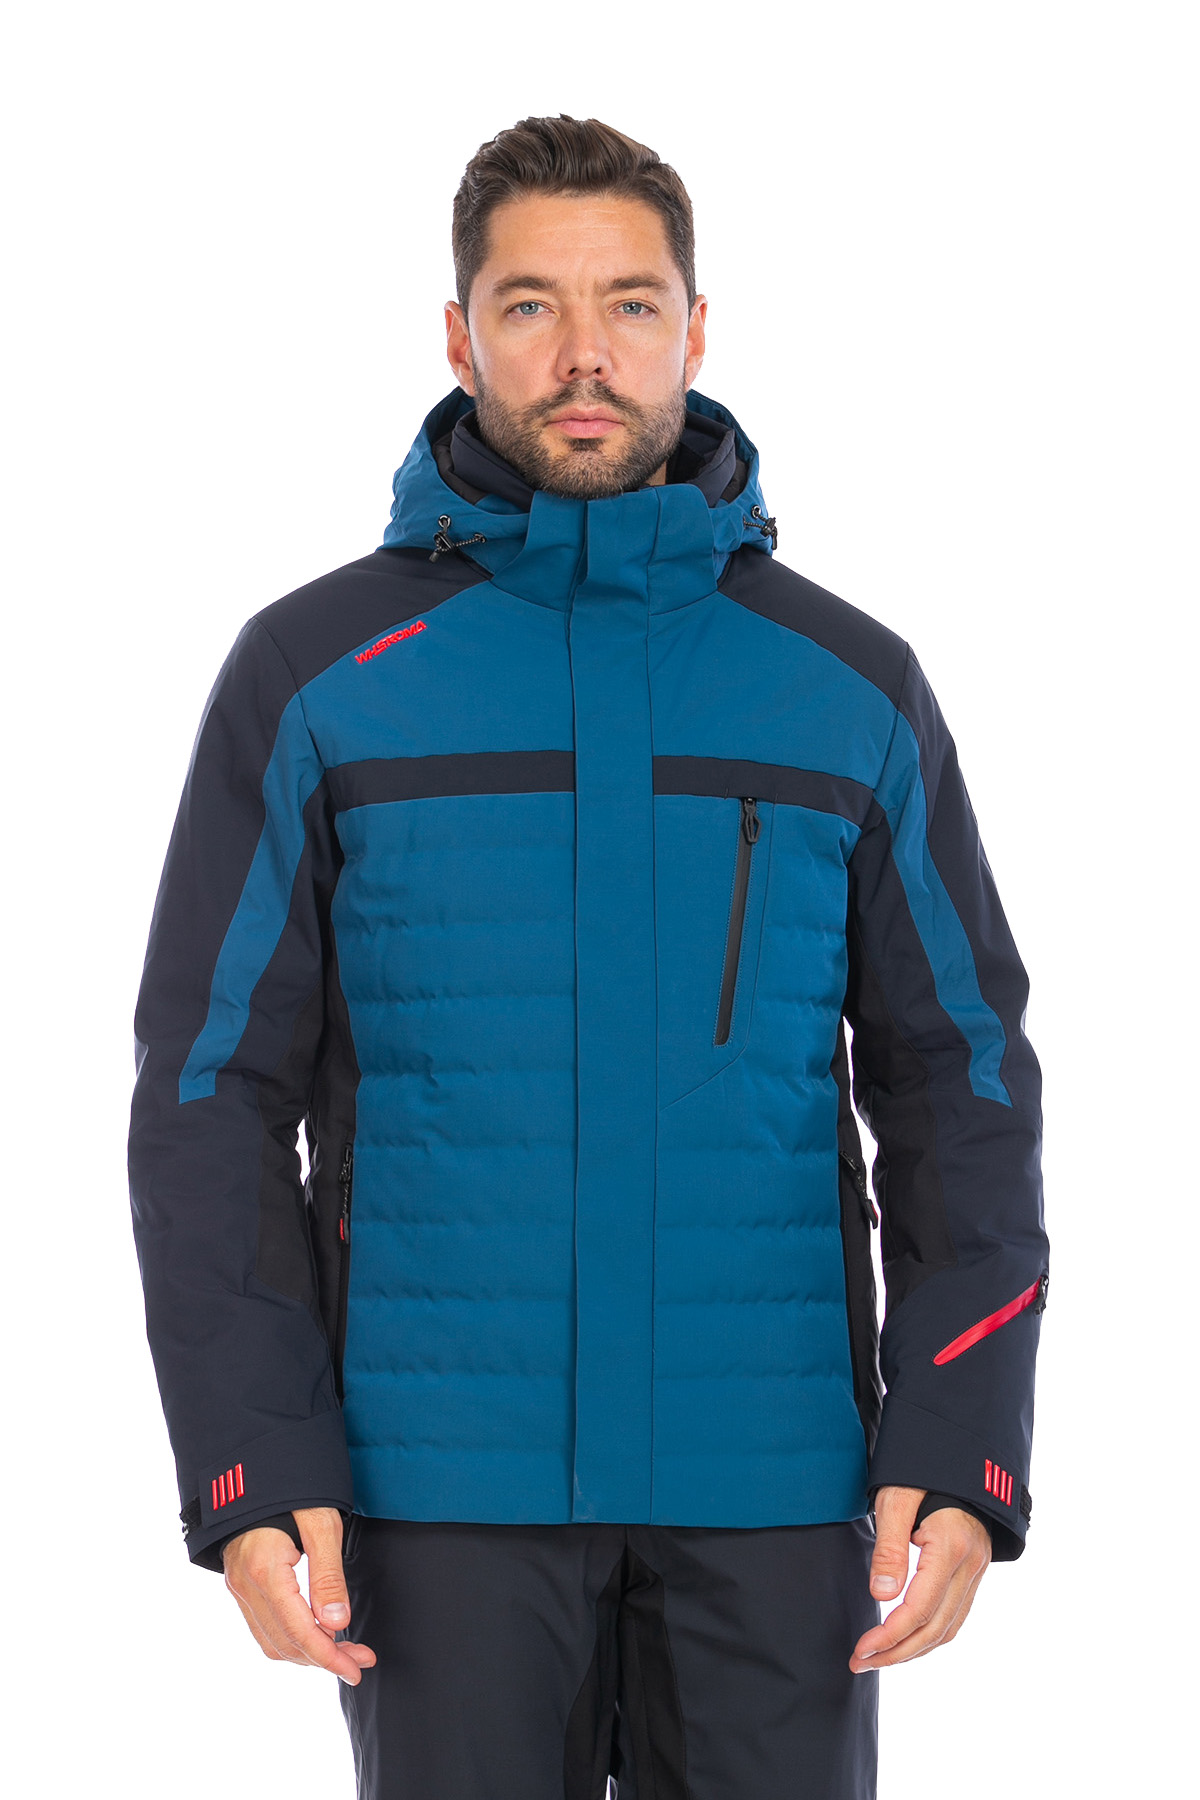 Мужская горнолыжная Куртка WHS Серо-синий, 8783363 (50, l)